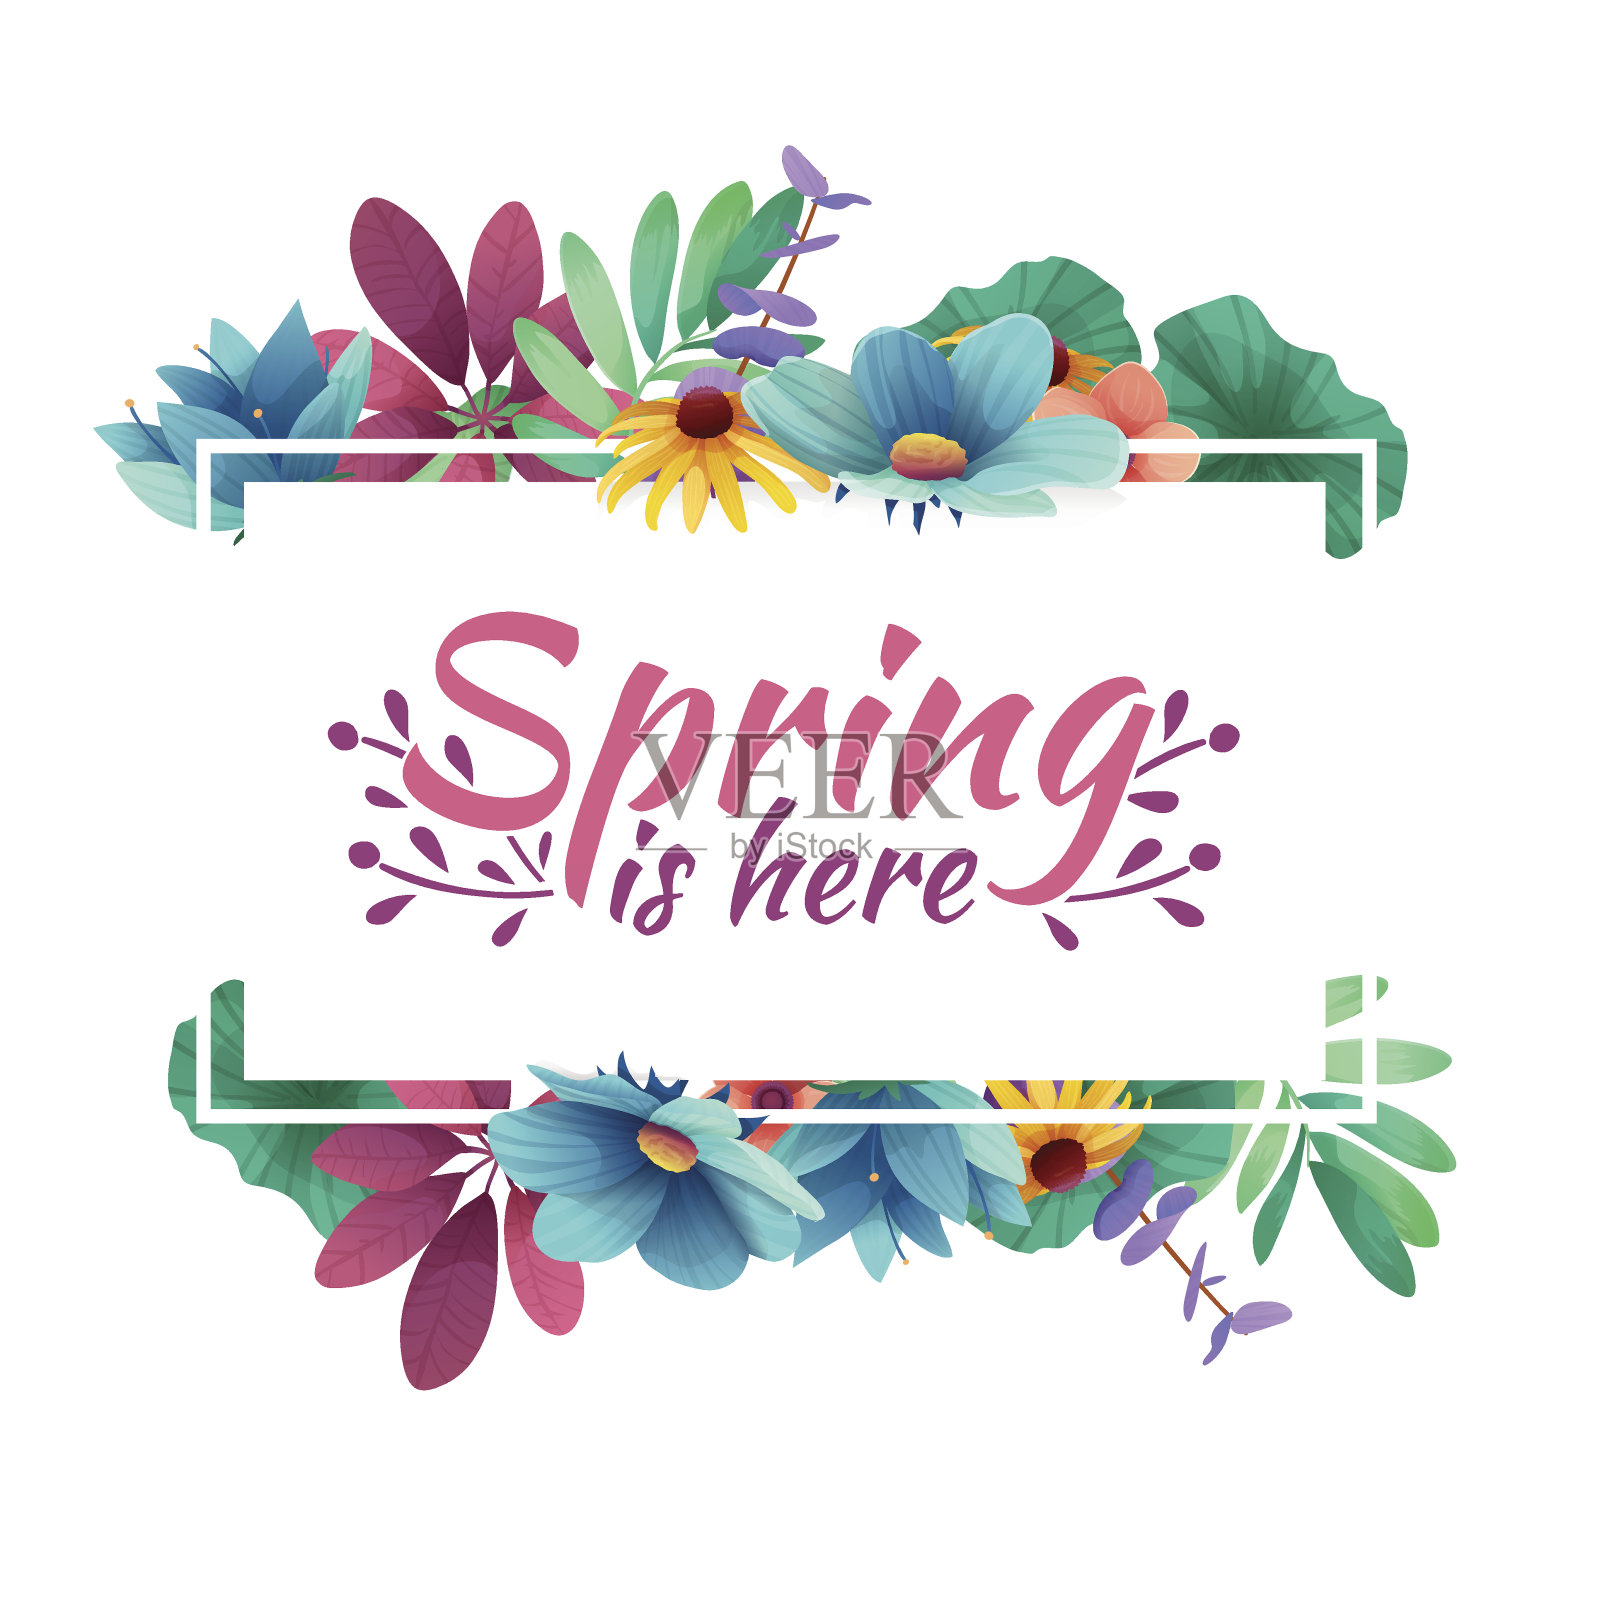 设计横幅与春天在这里图标。白色框架和草本植物的春季卡片。提供春季植物、叶、花装饰优惠。向量插画图片素材